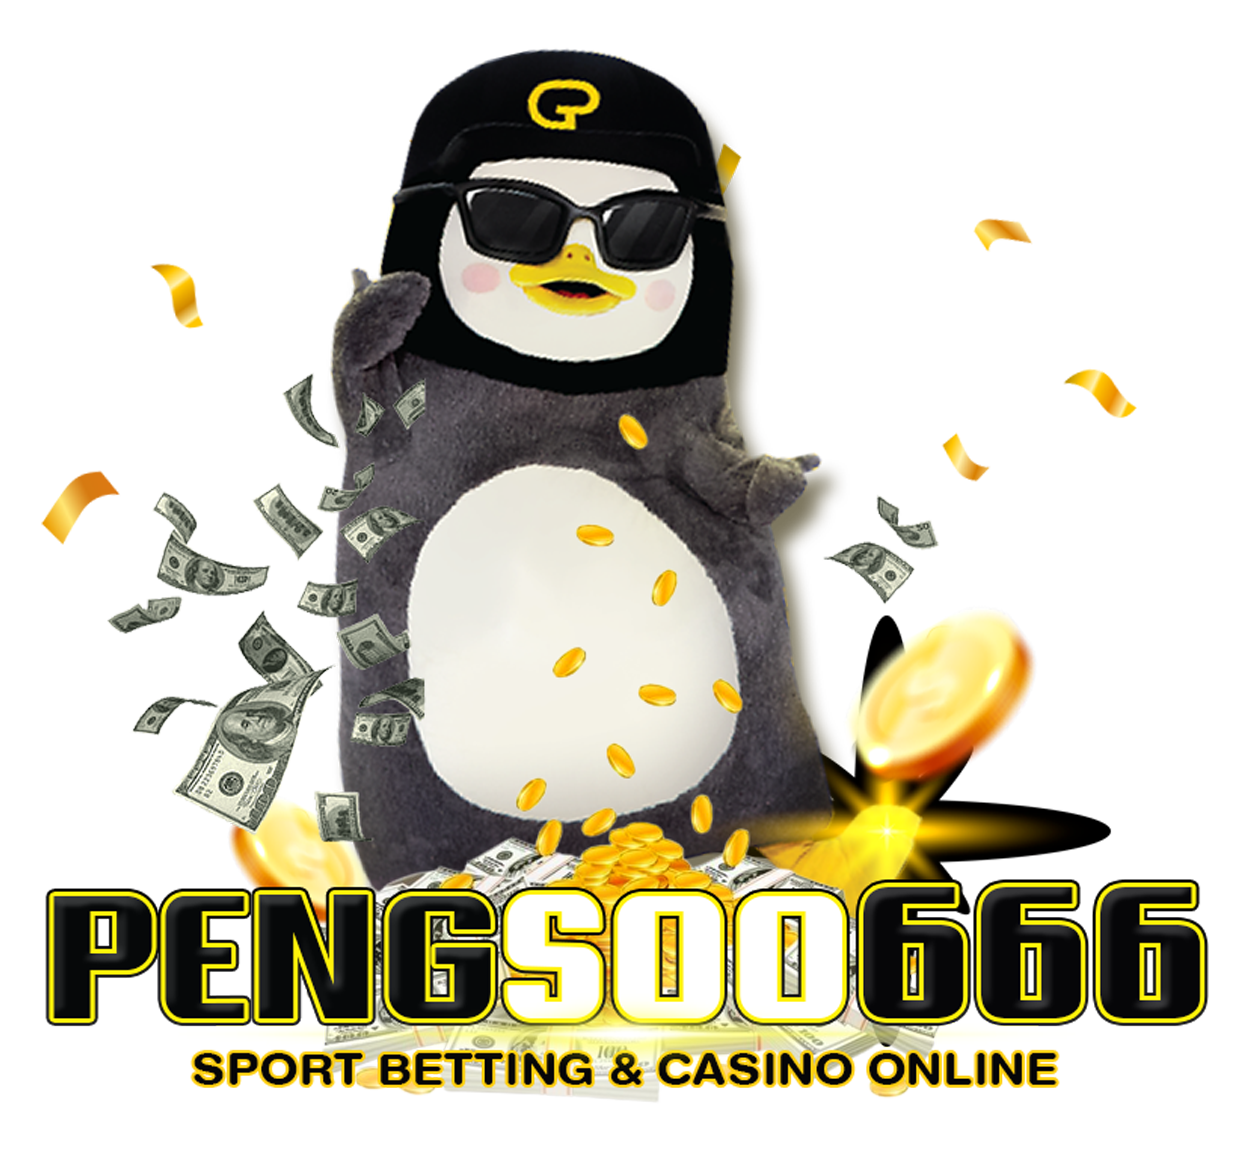 pengsoo666